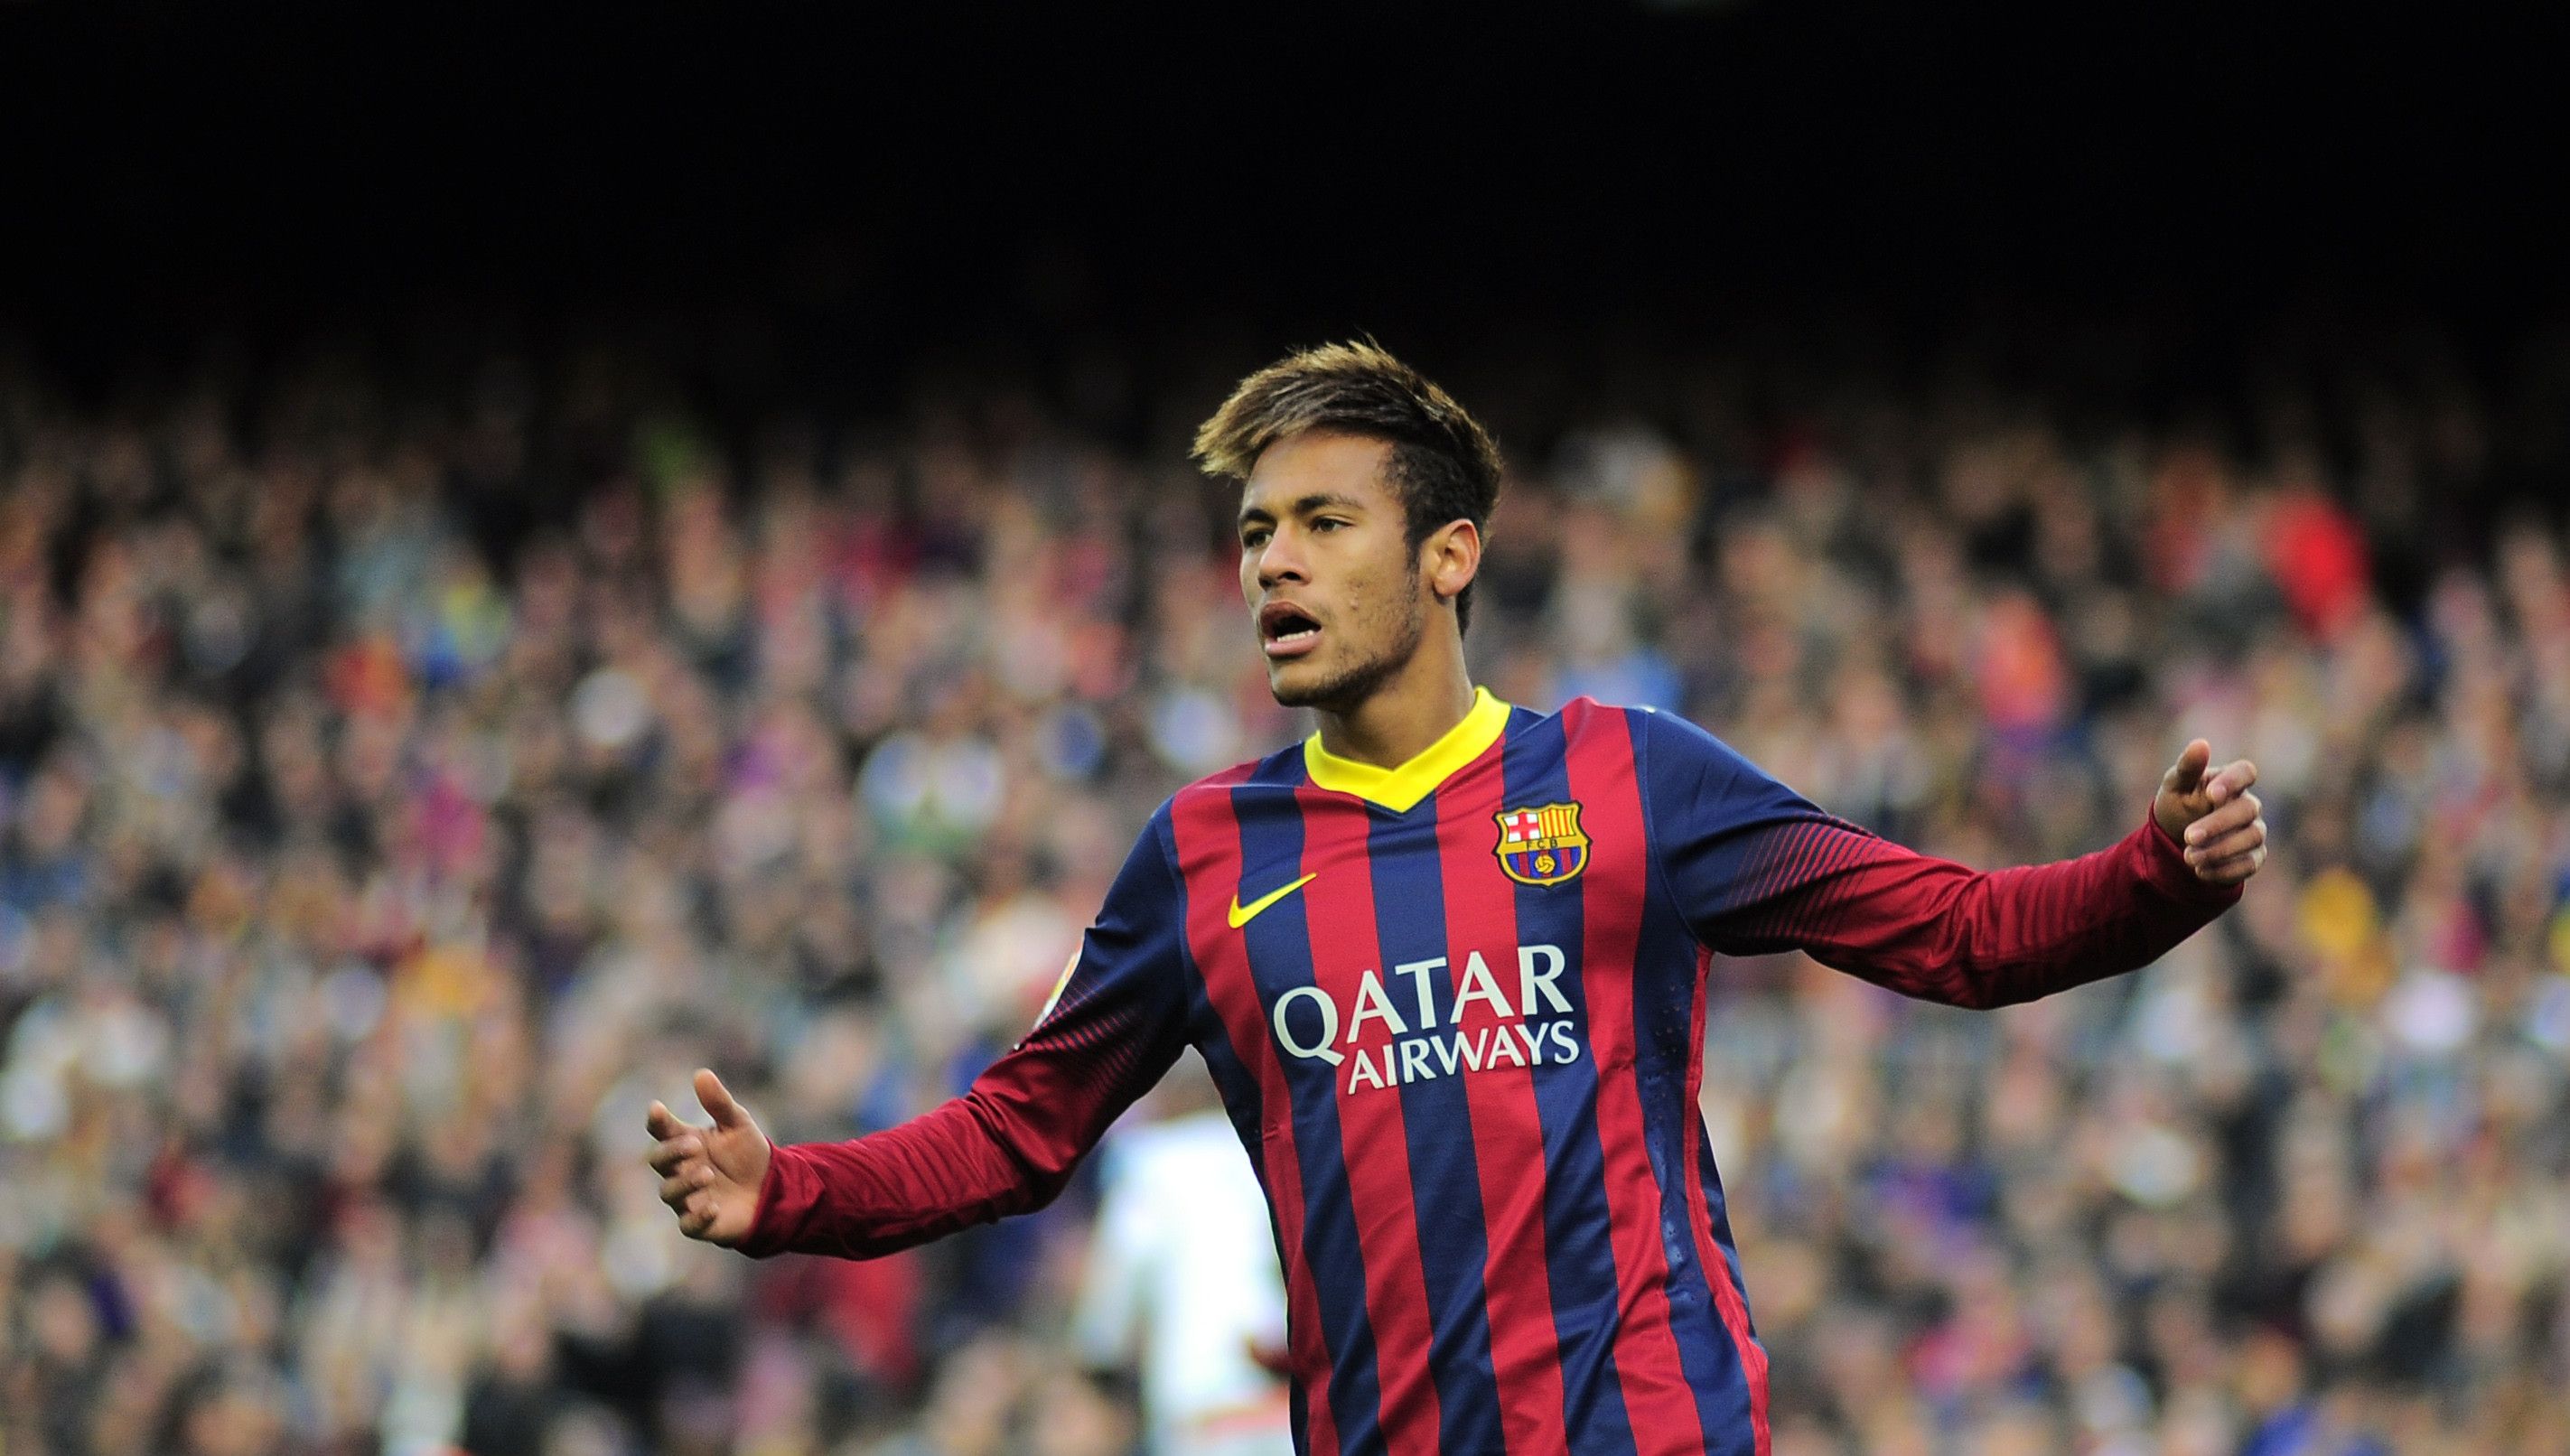 Neymar fondos de pantalla, fotos, imágenes